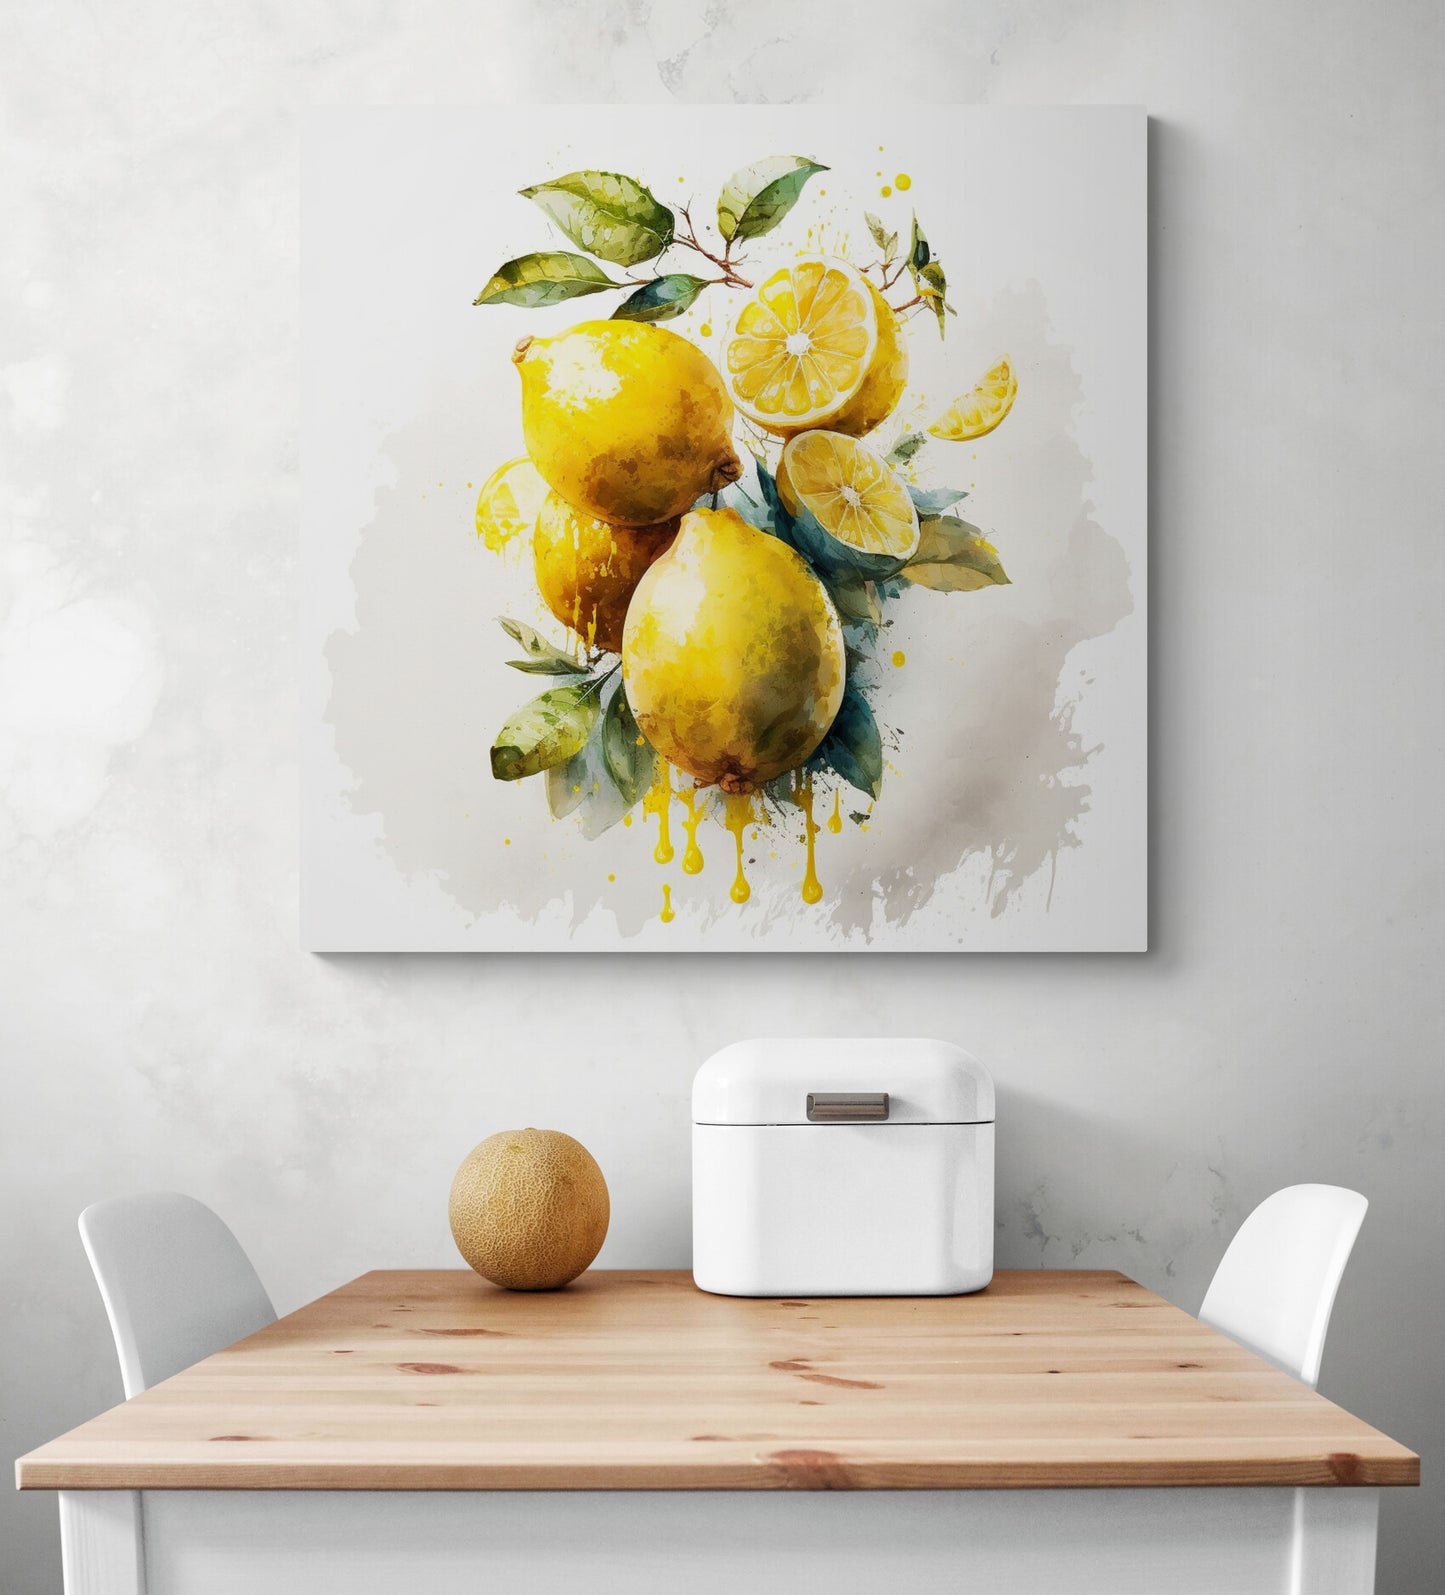 Grand tableau peints à la main et à l'aquarelle d'une grappe de citrons jaunes. Les fruits sont juteux et leur peau brillante. L'aquarelle ajoute luminosité et transparence, donnant l'impression que les citrons sont prêts à être cueillis. Des coulures ajoutent une touche de mouvement